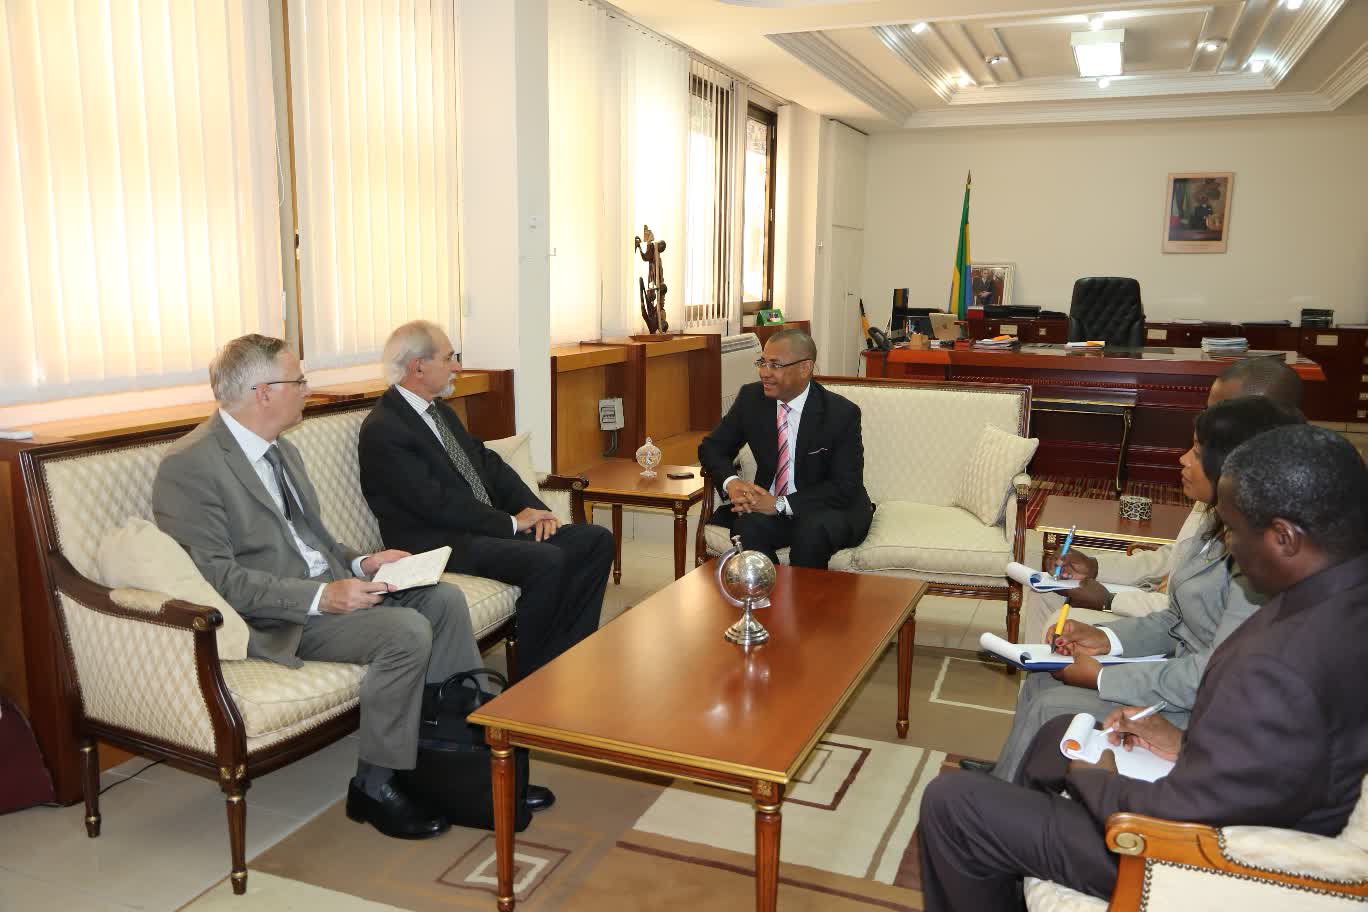 Le Ministre recevant l'Ambassadeur en présence de ses collaborateurs